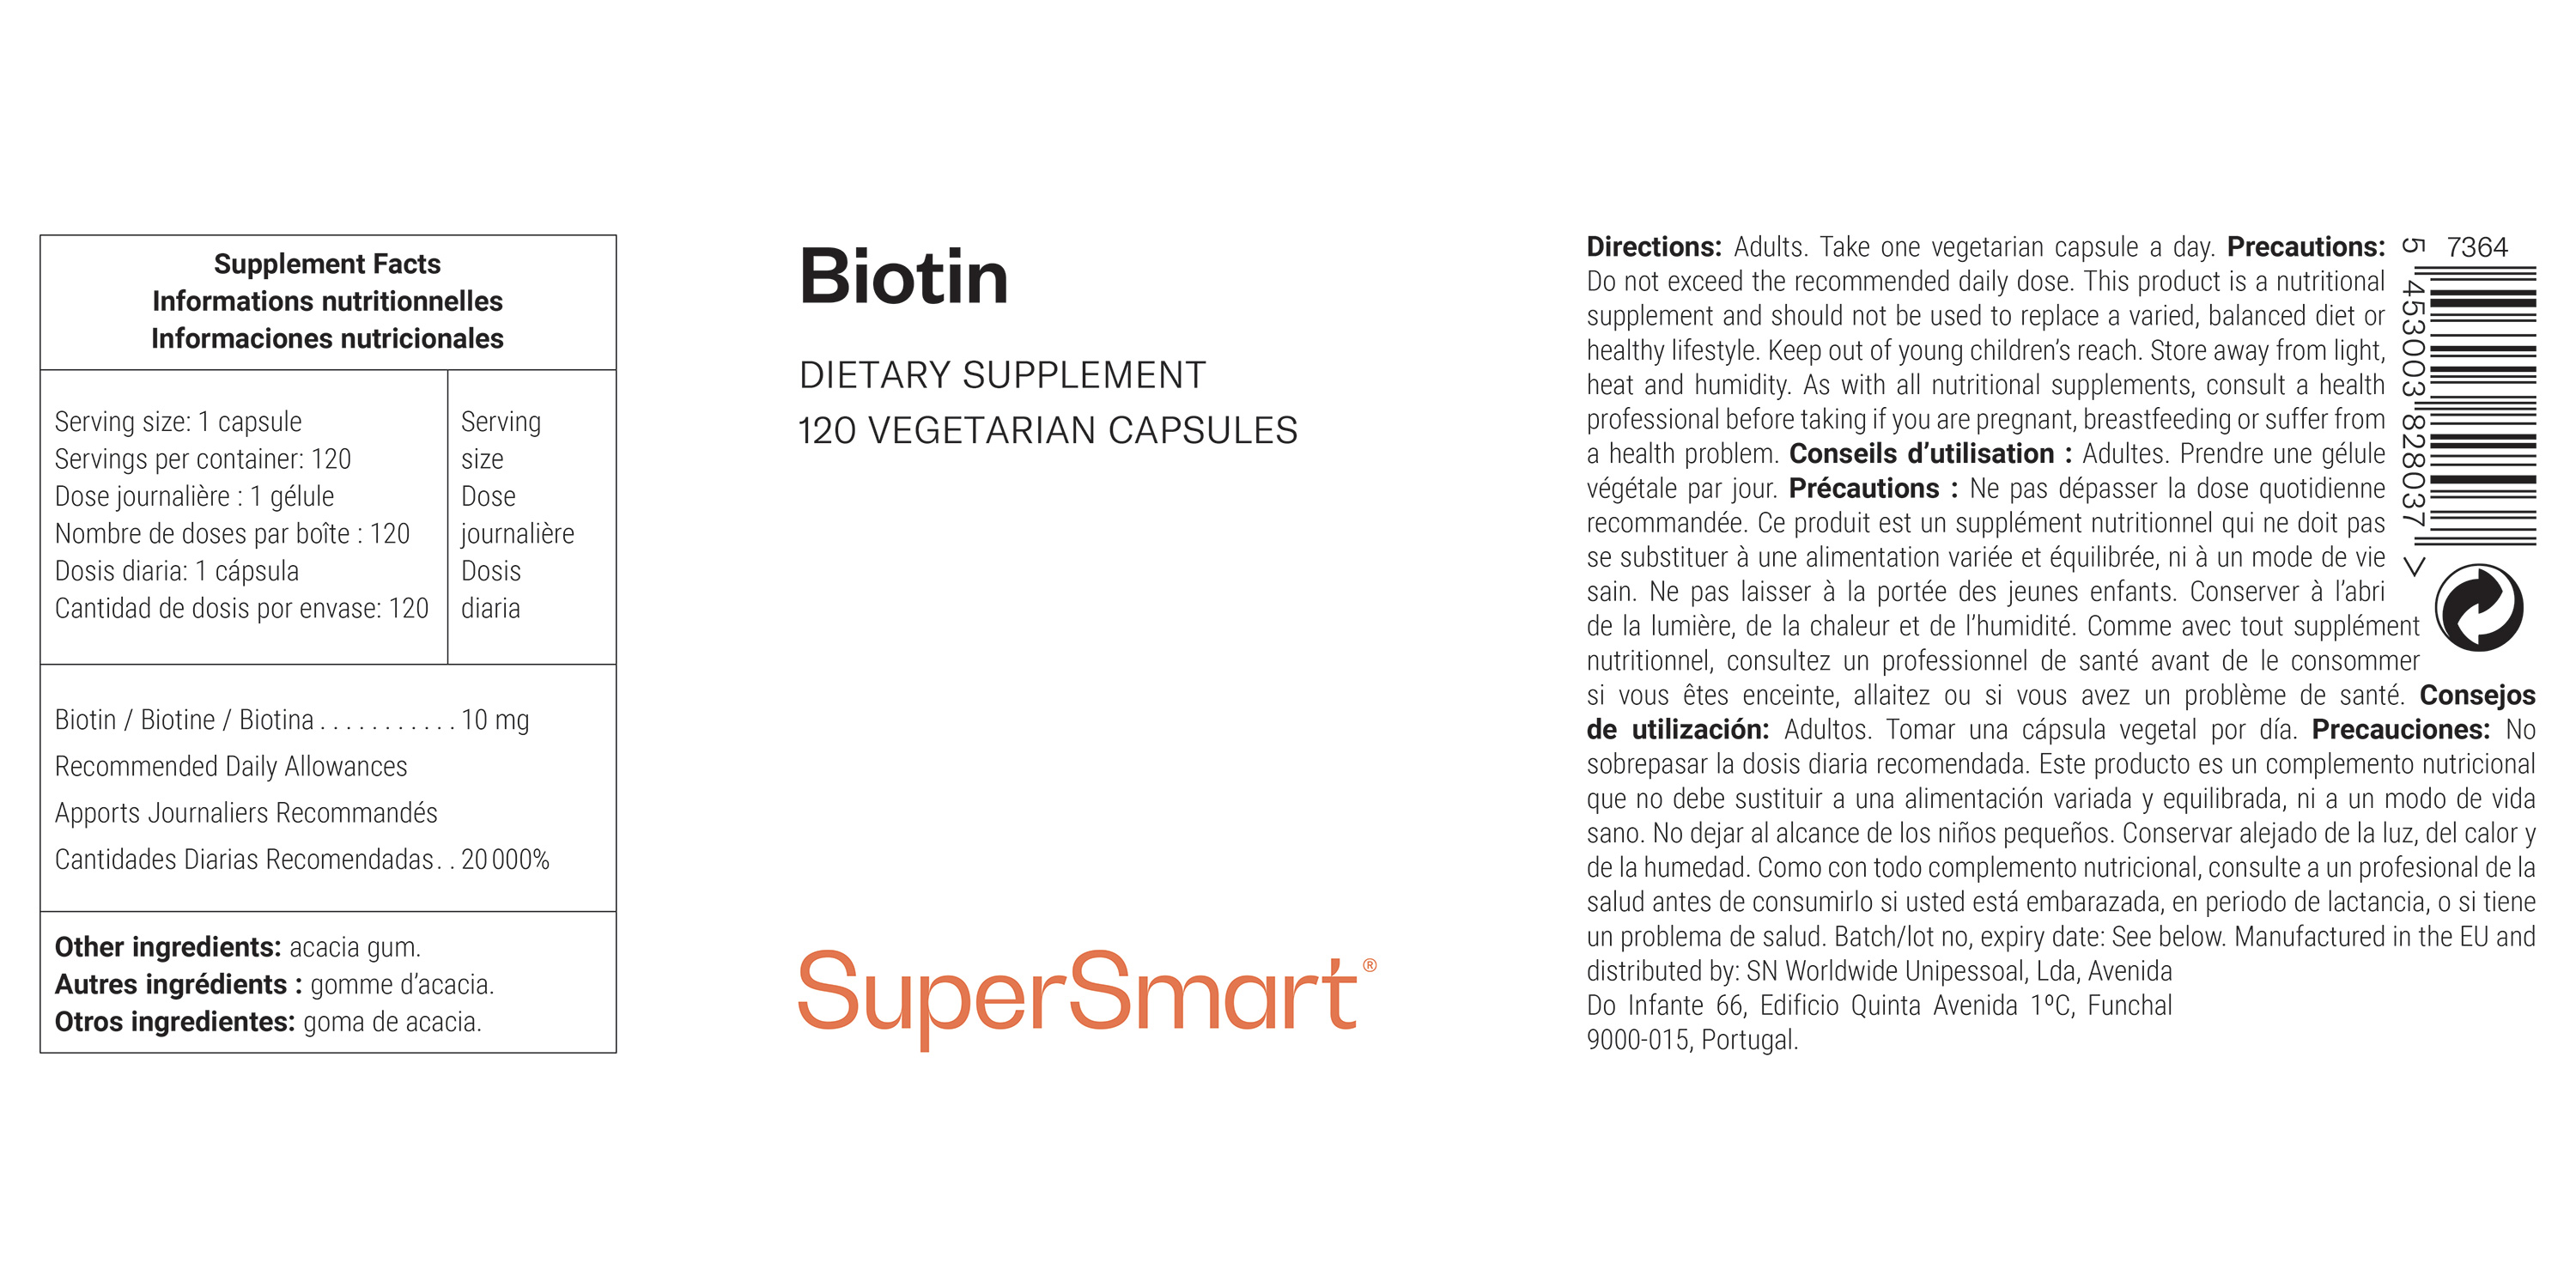 Frasco de suplemento alimentar de biotina ou vitamina B7